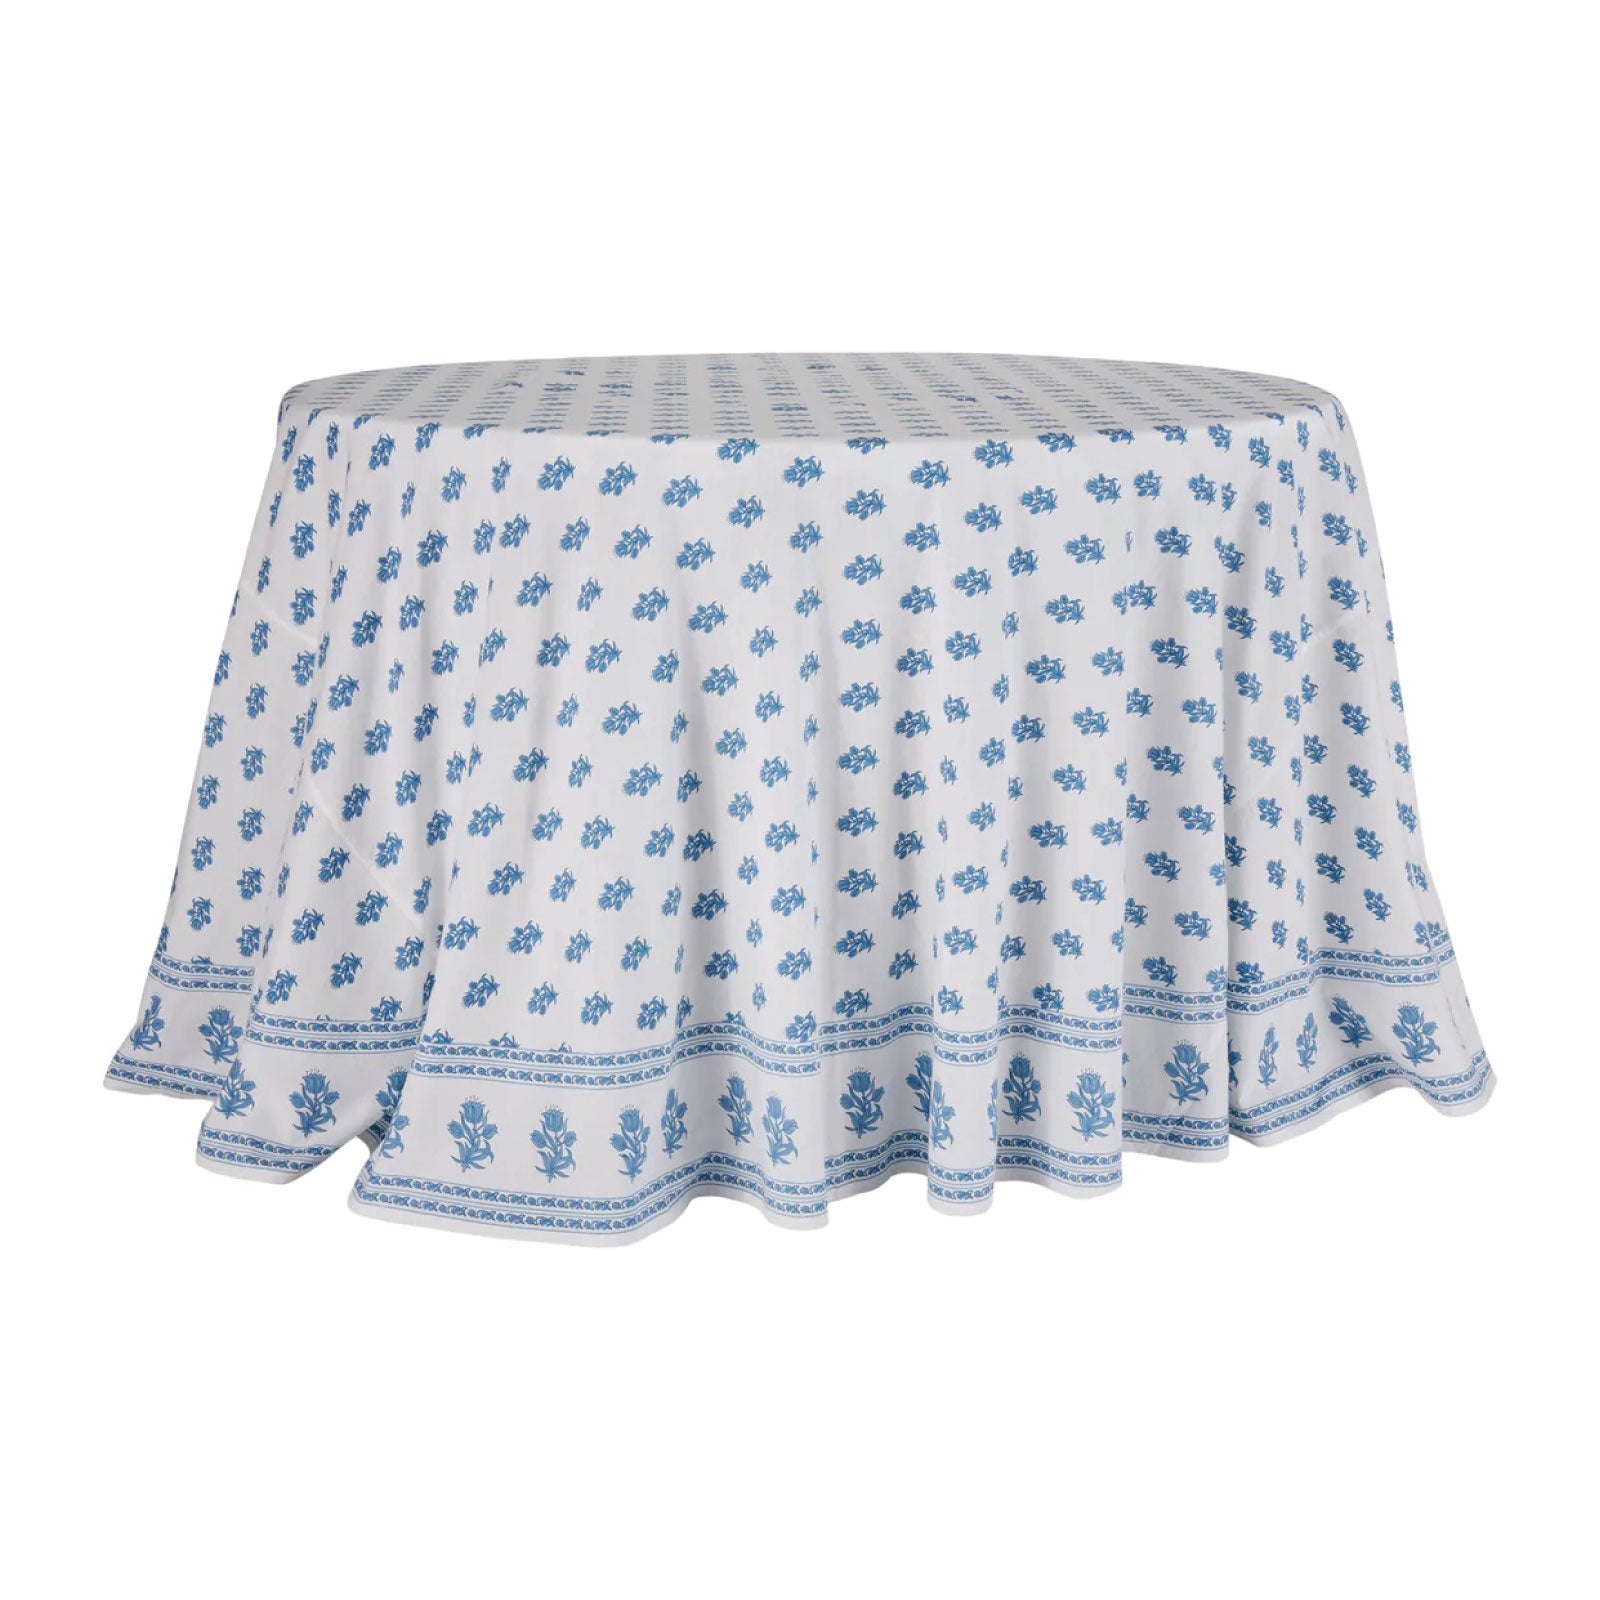 Juliette Round Tablecloth